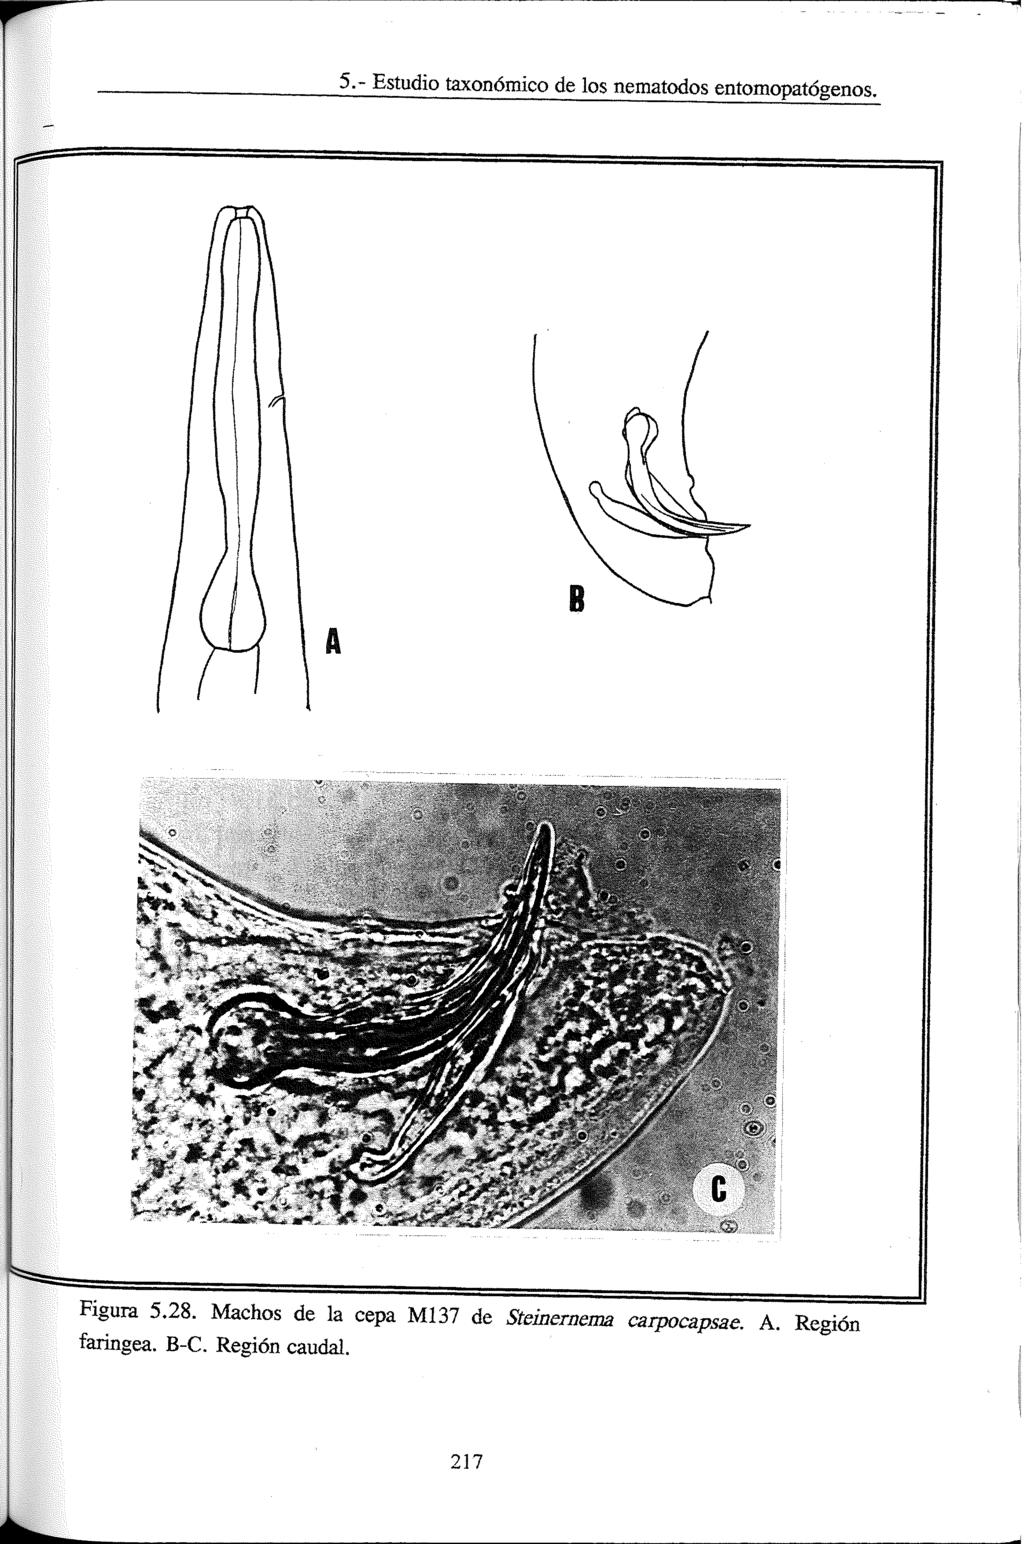 5.- Estudio taxonómico de los nematodos entomopatógenos. Figura 5.28.